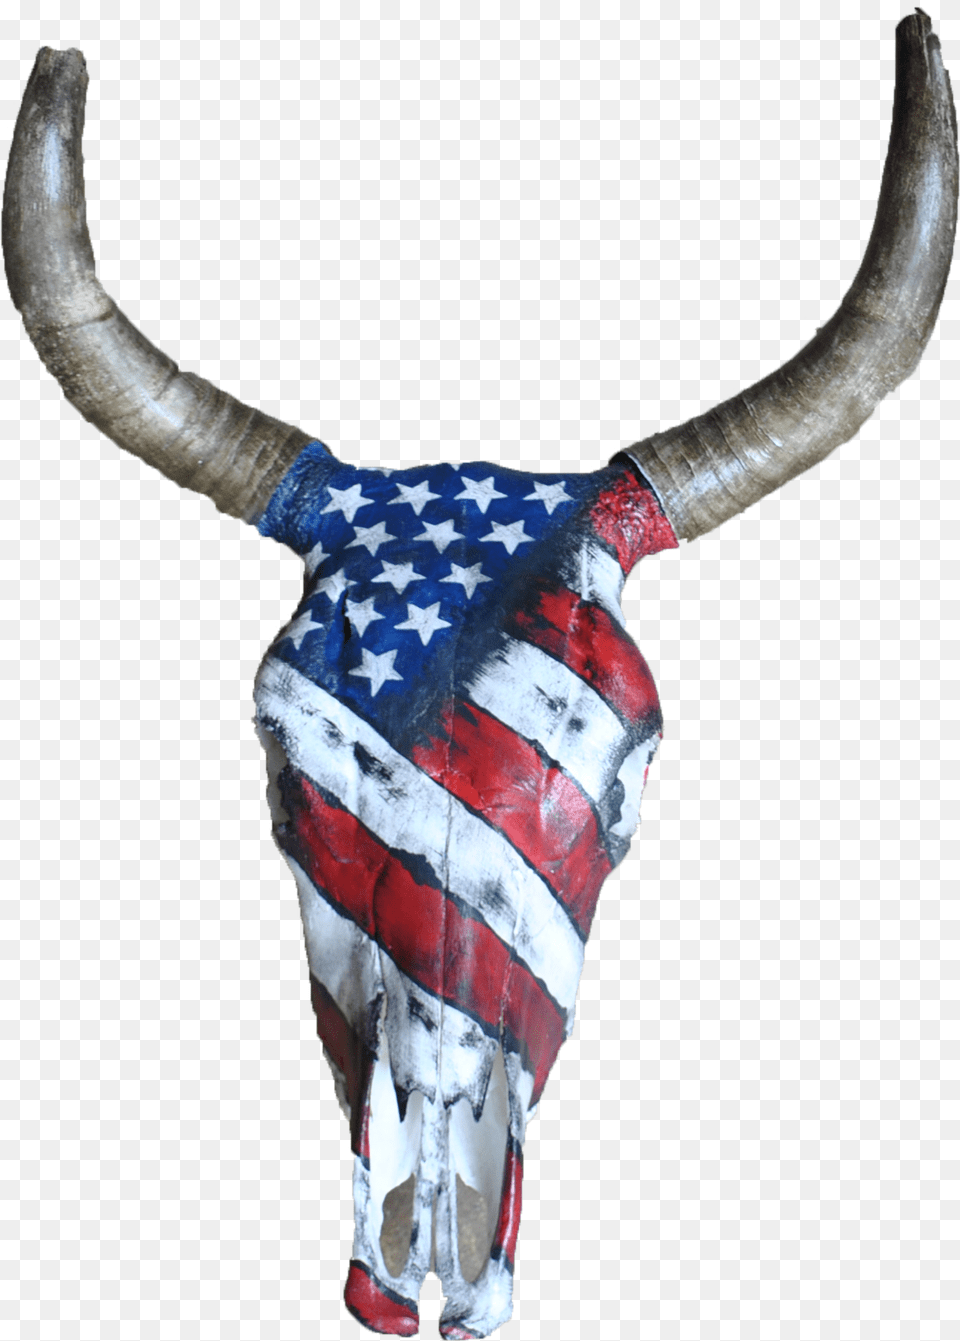 Bull, Animal, Cattle, Livestock, Longhorn Png Image